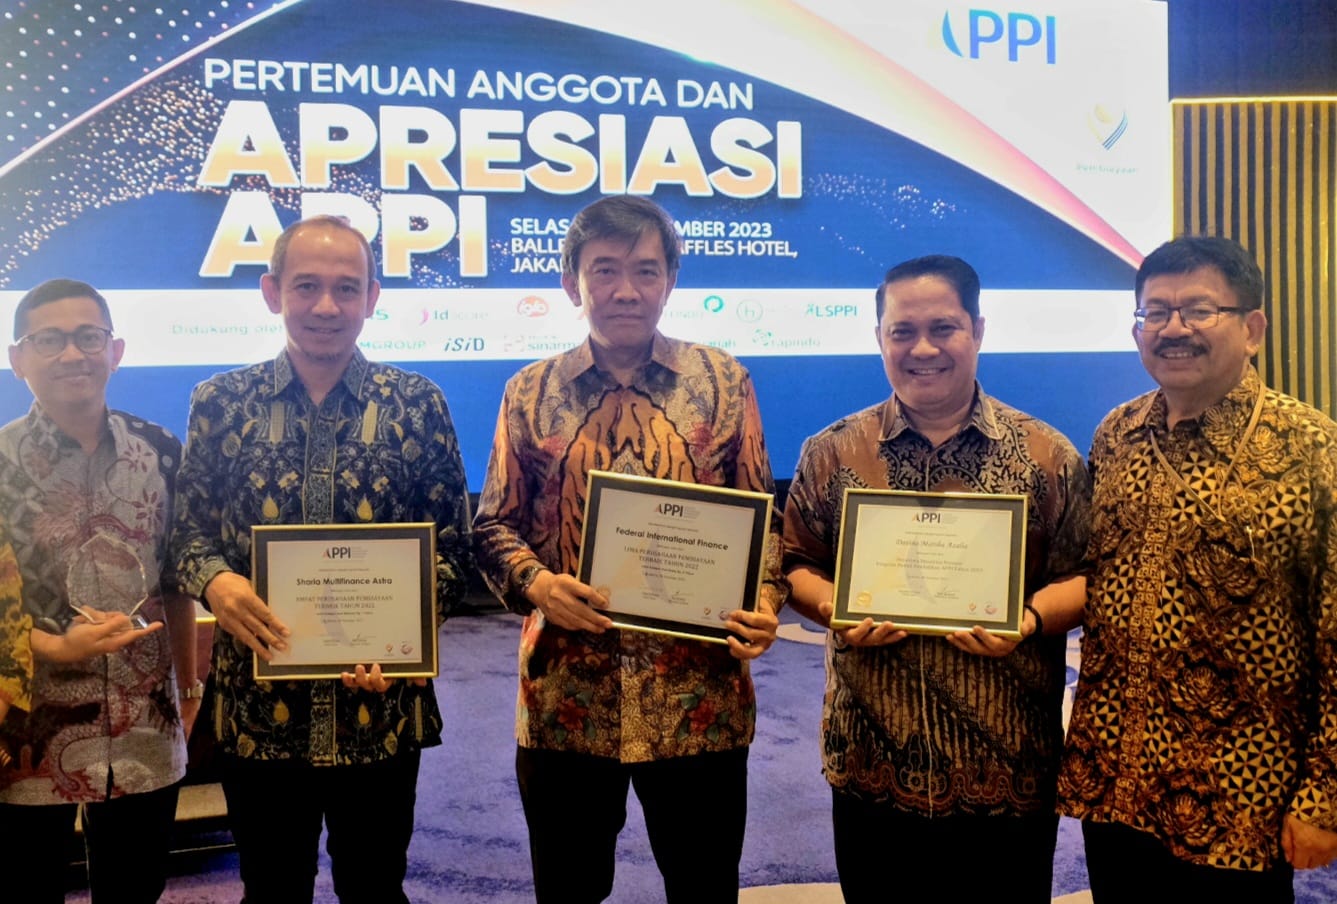    4 Penghargaan Diraih FIFGROUP dari Asosiasi Perusahaan Pembiayaan Indonesia